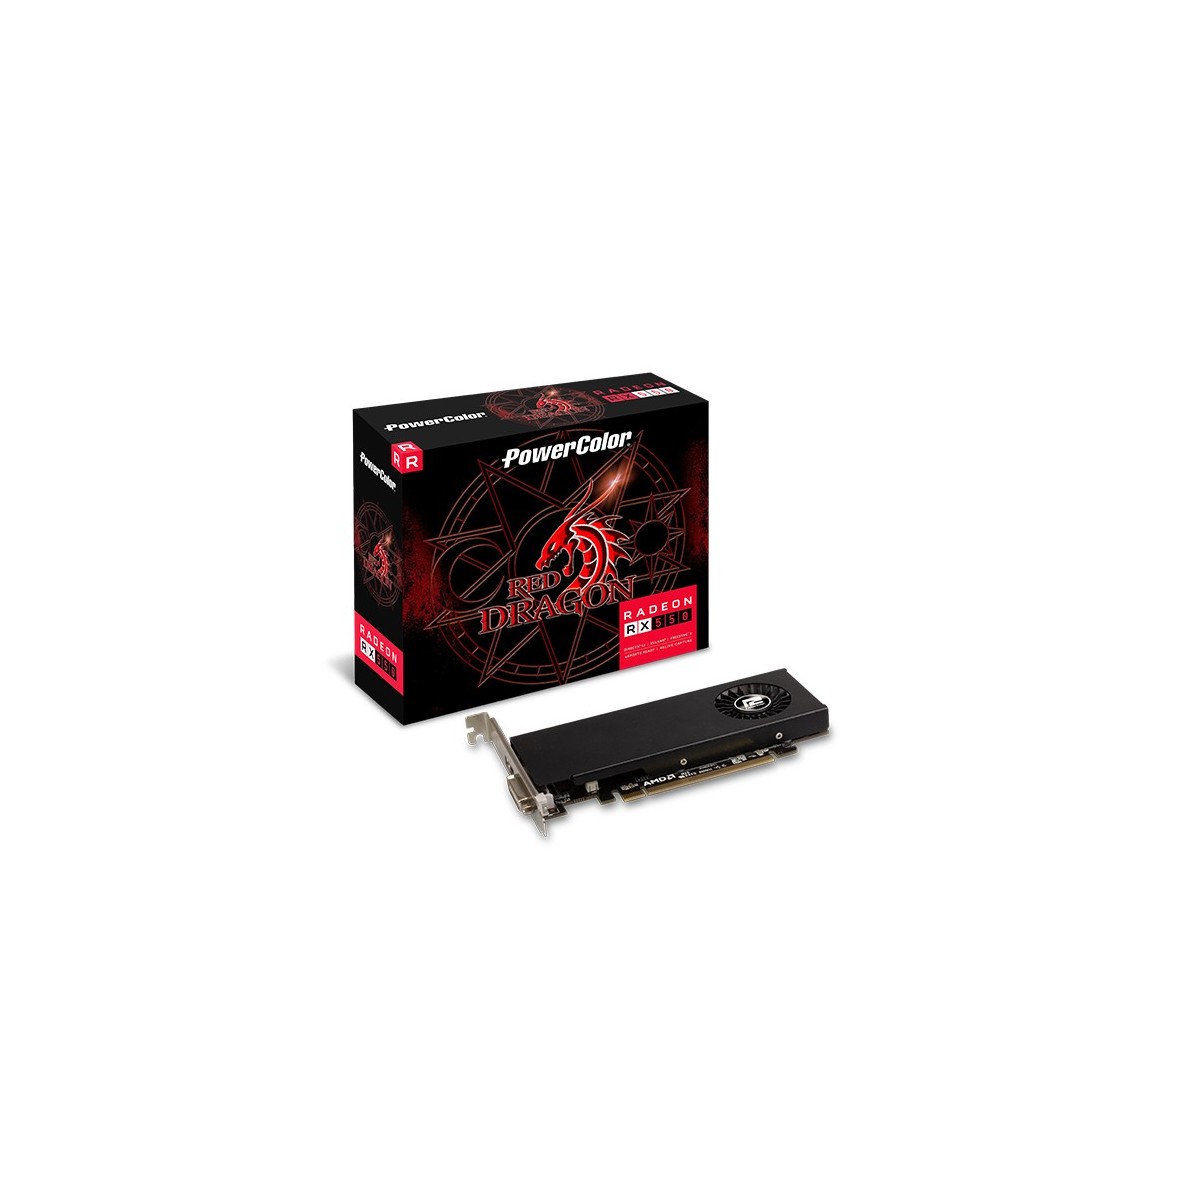 PowerColor RX550 4GB GDDR5 HDMI DVI - 4,096 MB